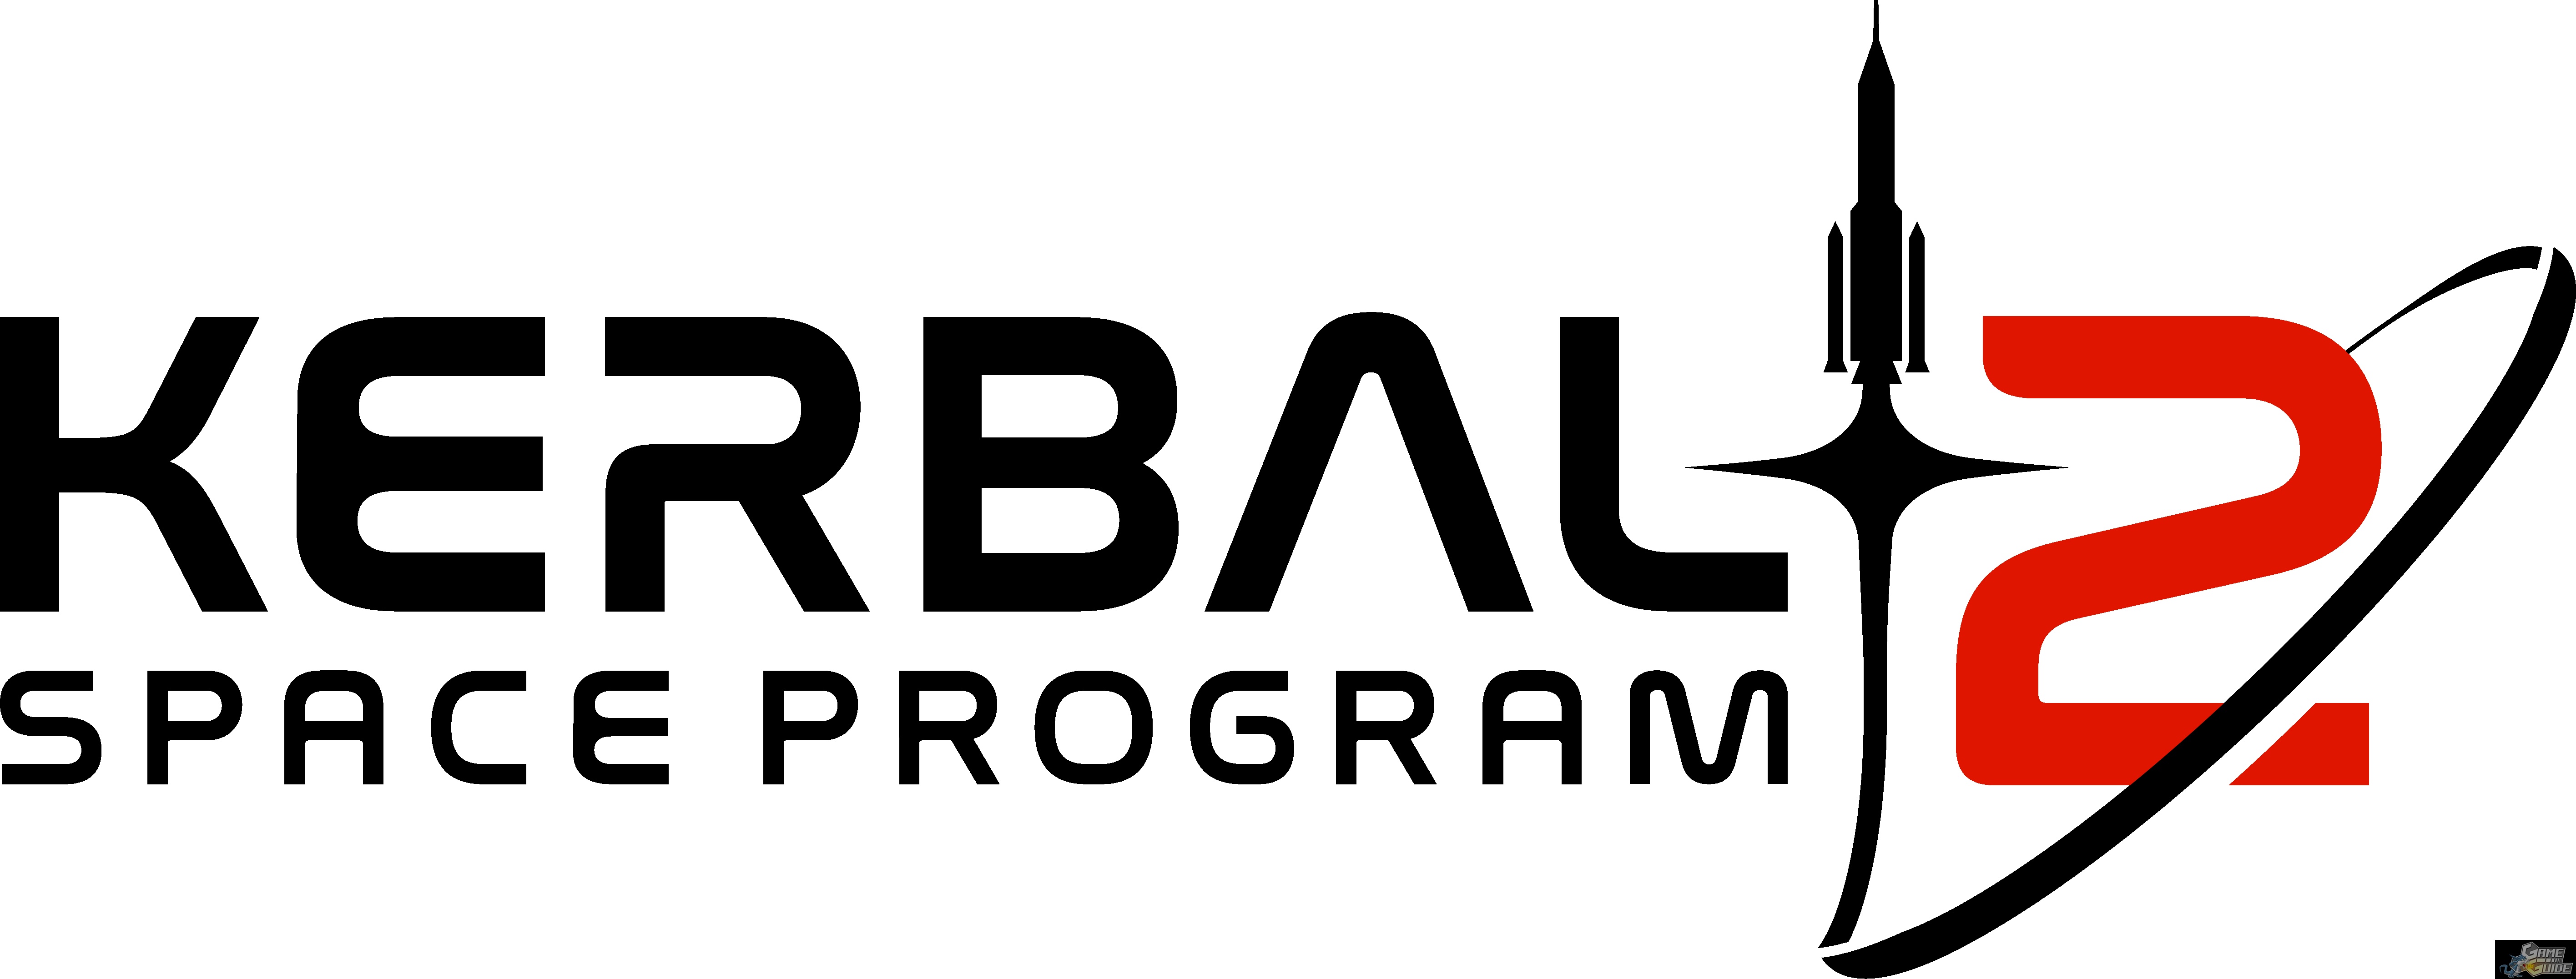 download free kerbal space program 2 price